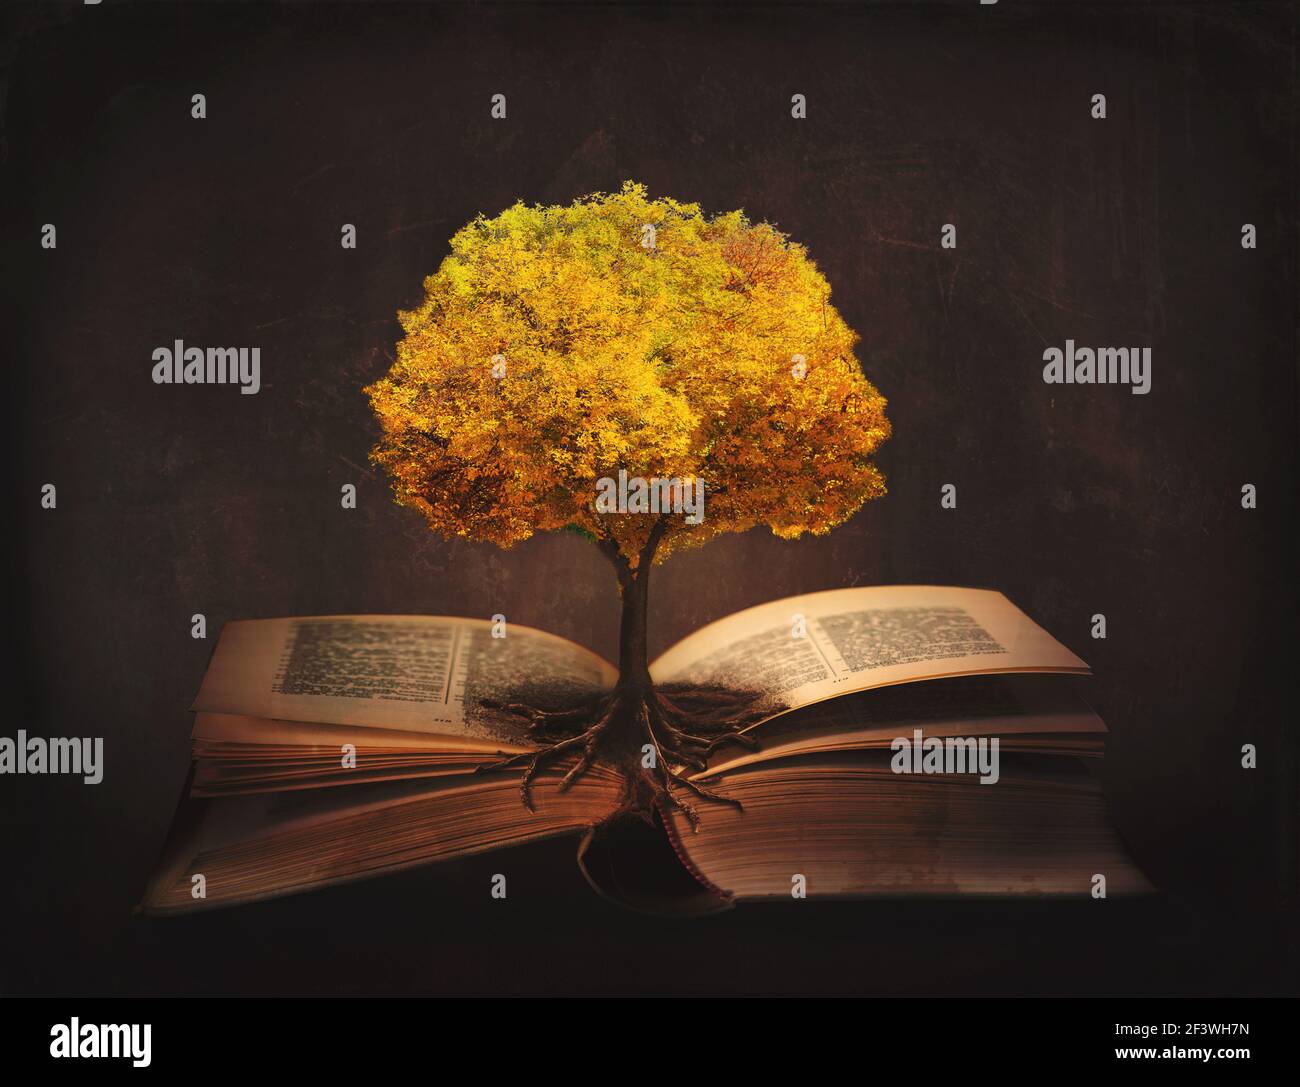 Buch des Lebens, des Wissens, der Weisheit - alter Baum und seine Wurzeln  auf den offenen Seiten eines magischen Buches Stockfotografie - Alamy